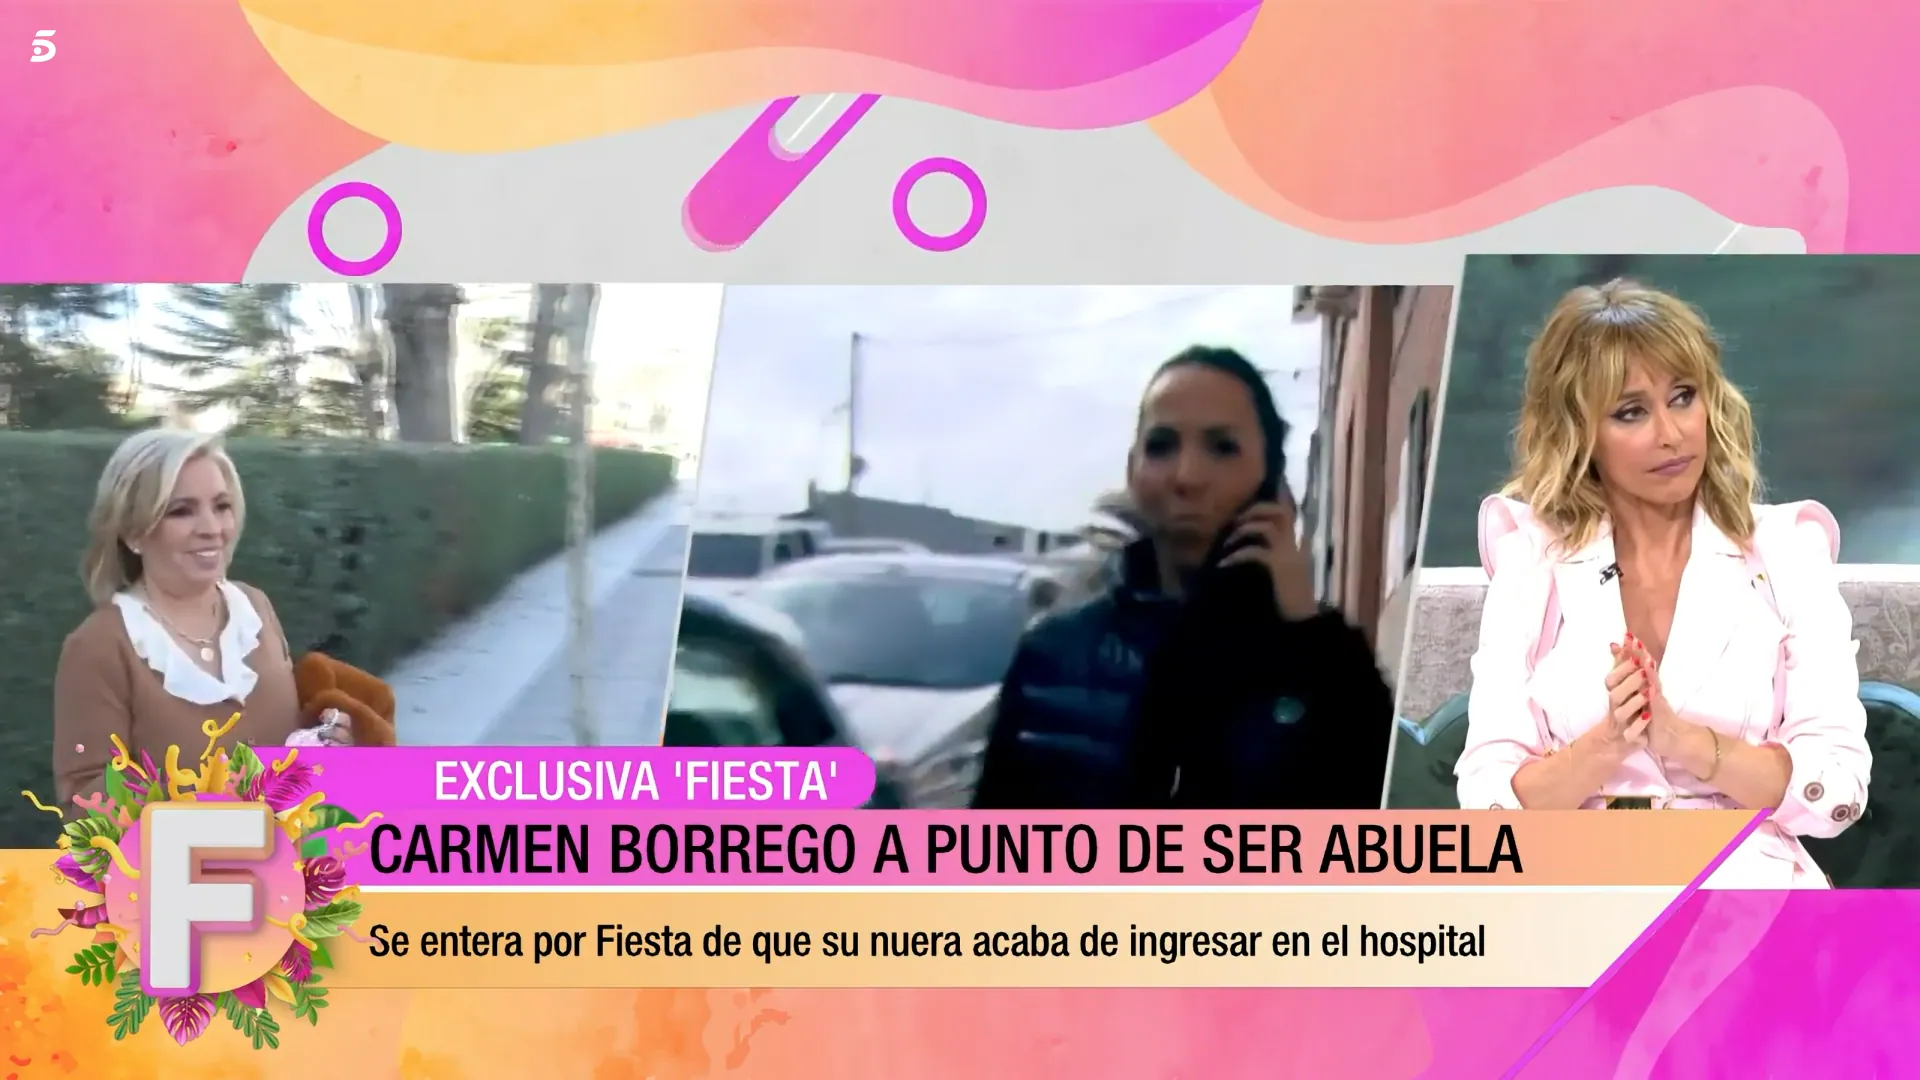 Carmen Borrego y su nuera, Paola Olmedo, no tienen buena relación (Telecinco)